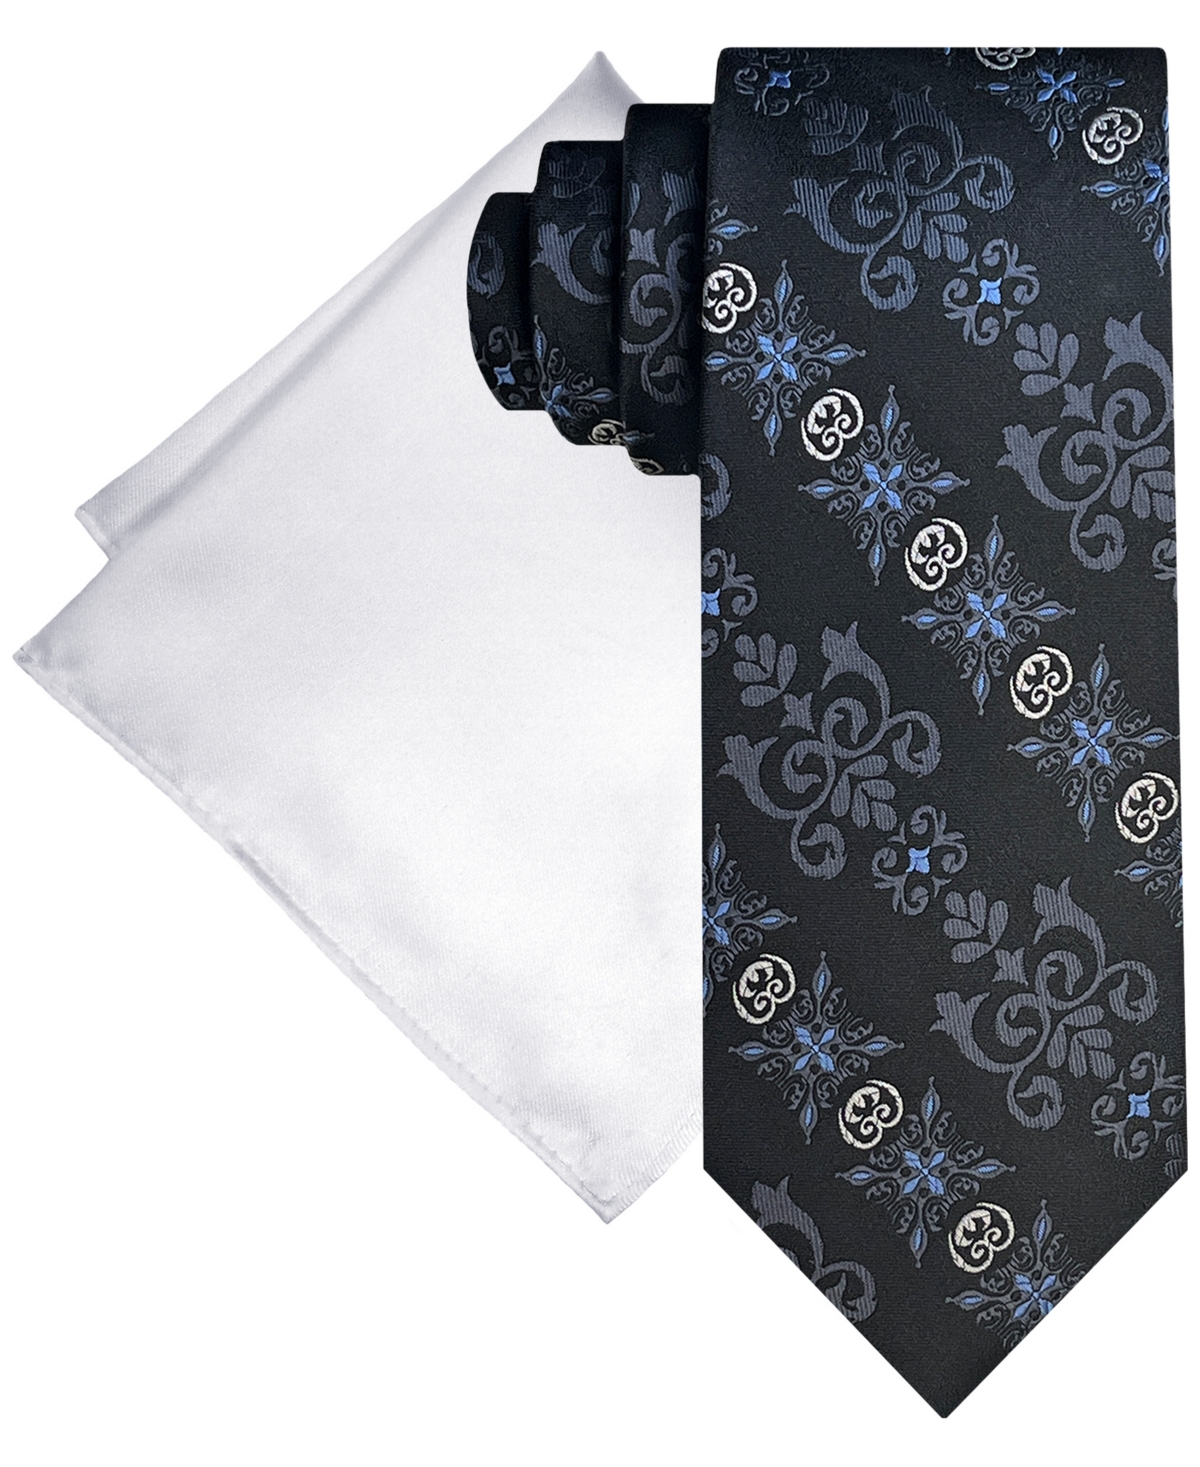 Men's Fancy Medallion Tie & Solid Pocket Square Set - Black